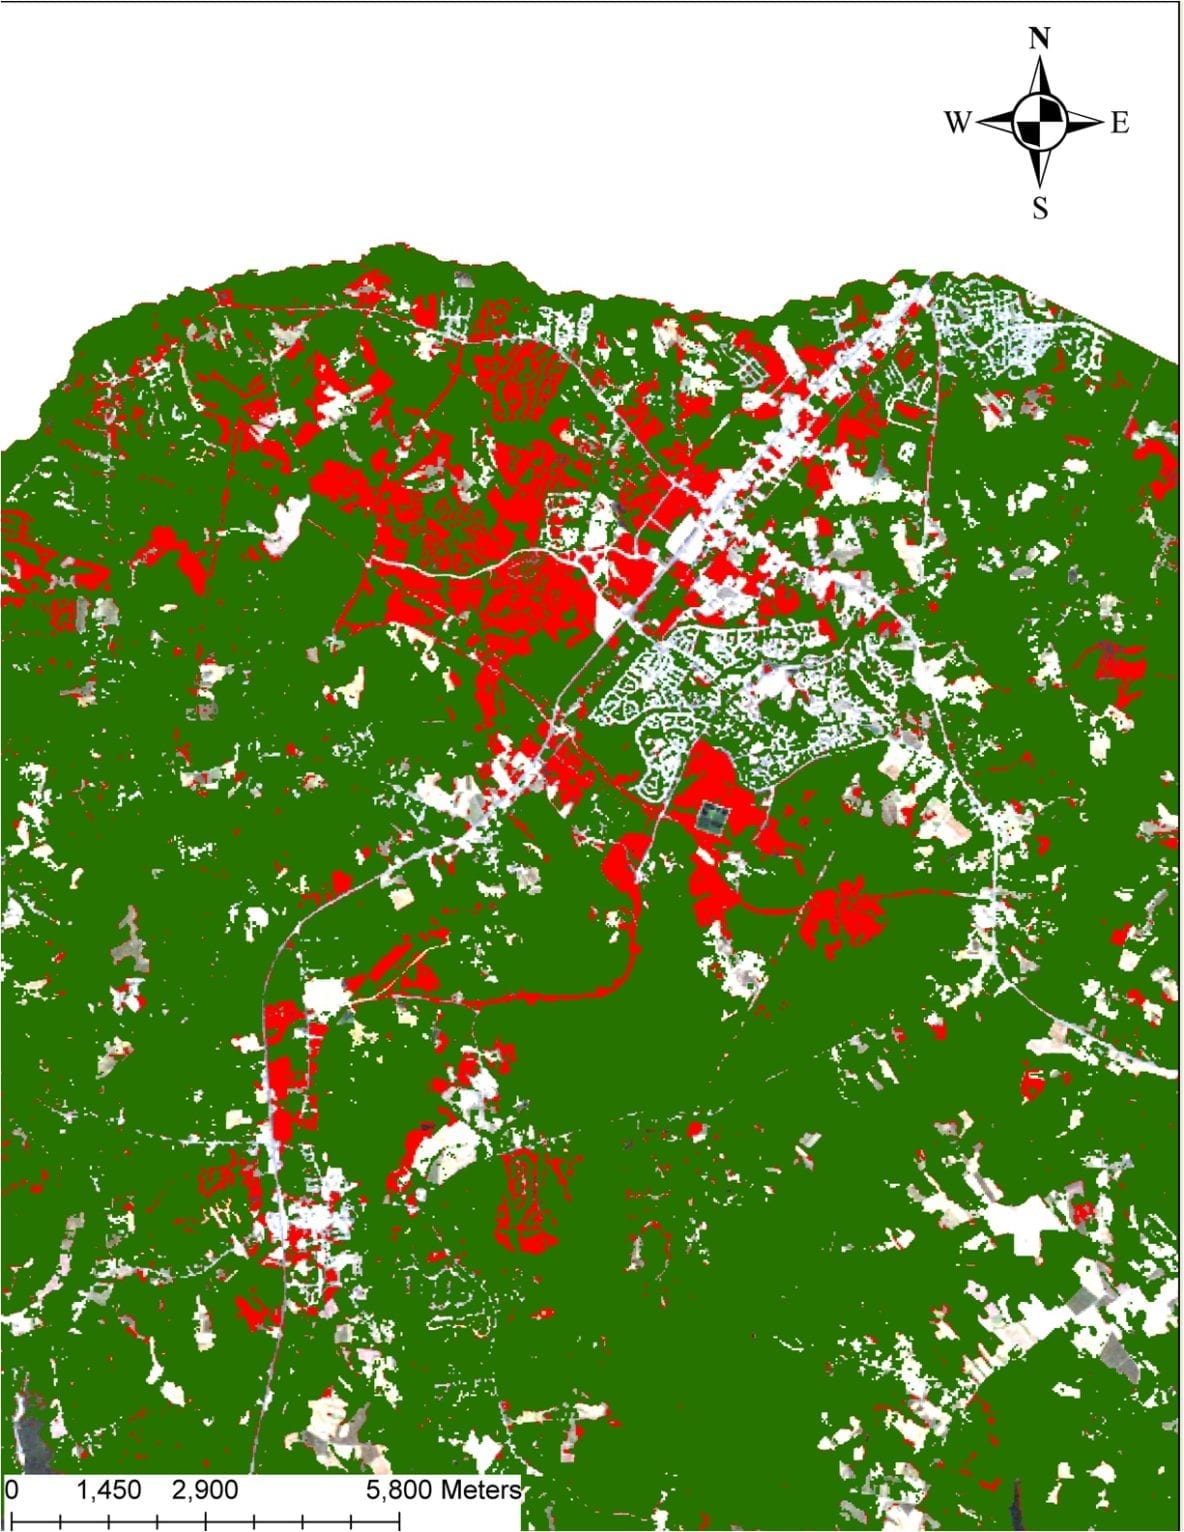 Map showing fragmentation of baltimore habitat